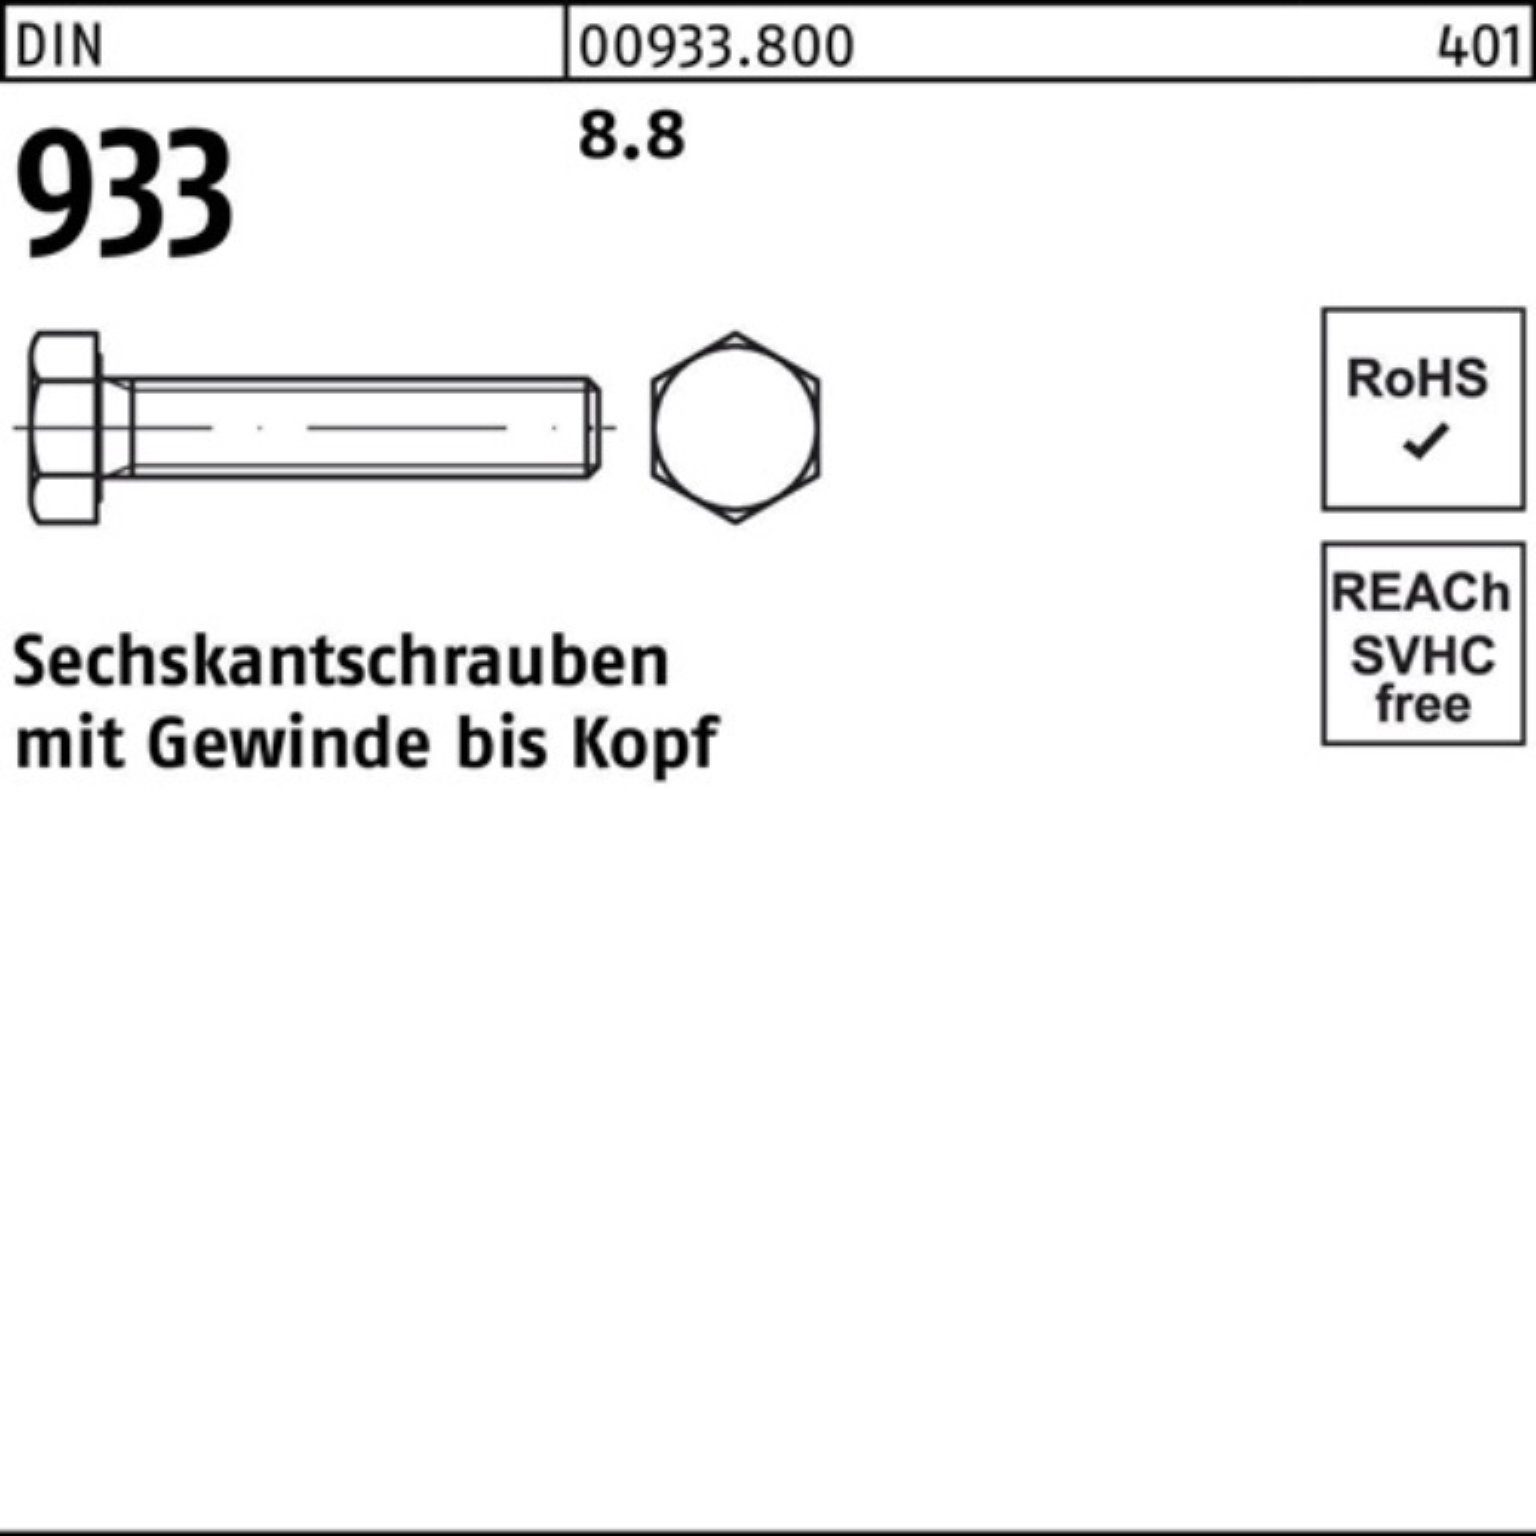 1 DIN DIN M30x 933 100er 933 100 8.8 Reyher VG Sechskantschraube Pack Sechskantschraube Stück